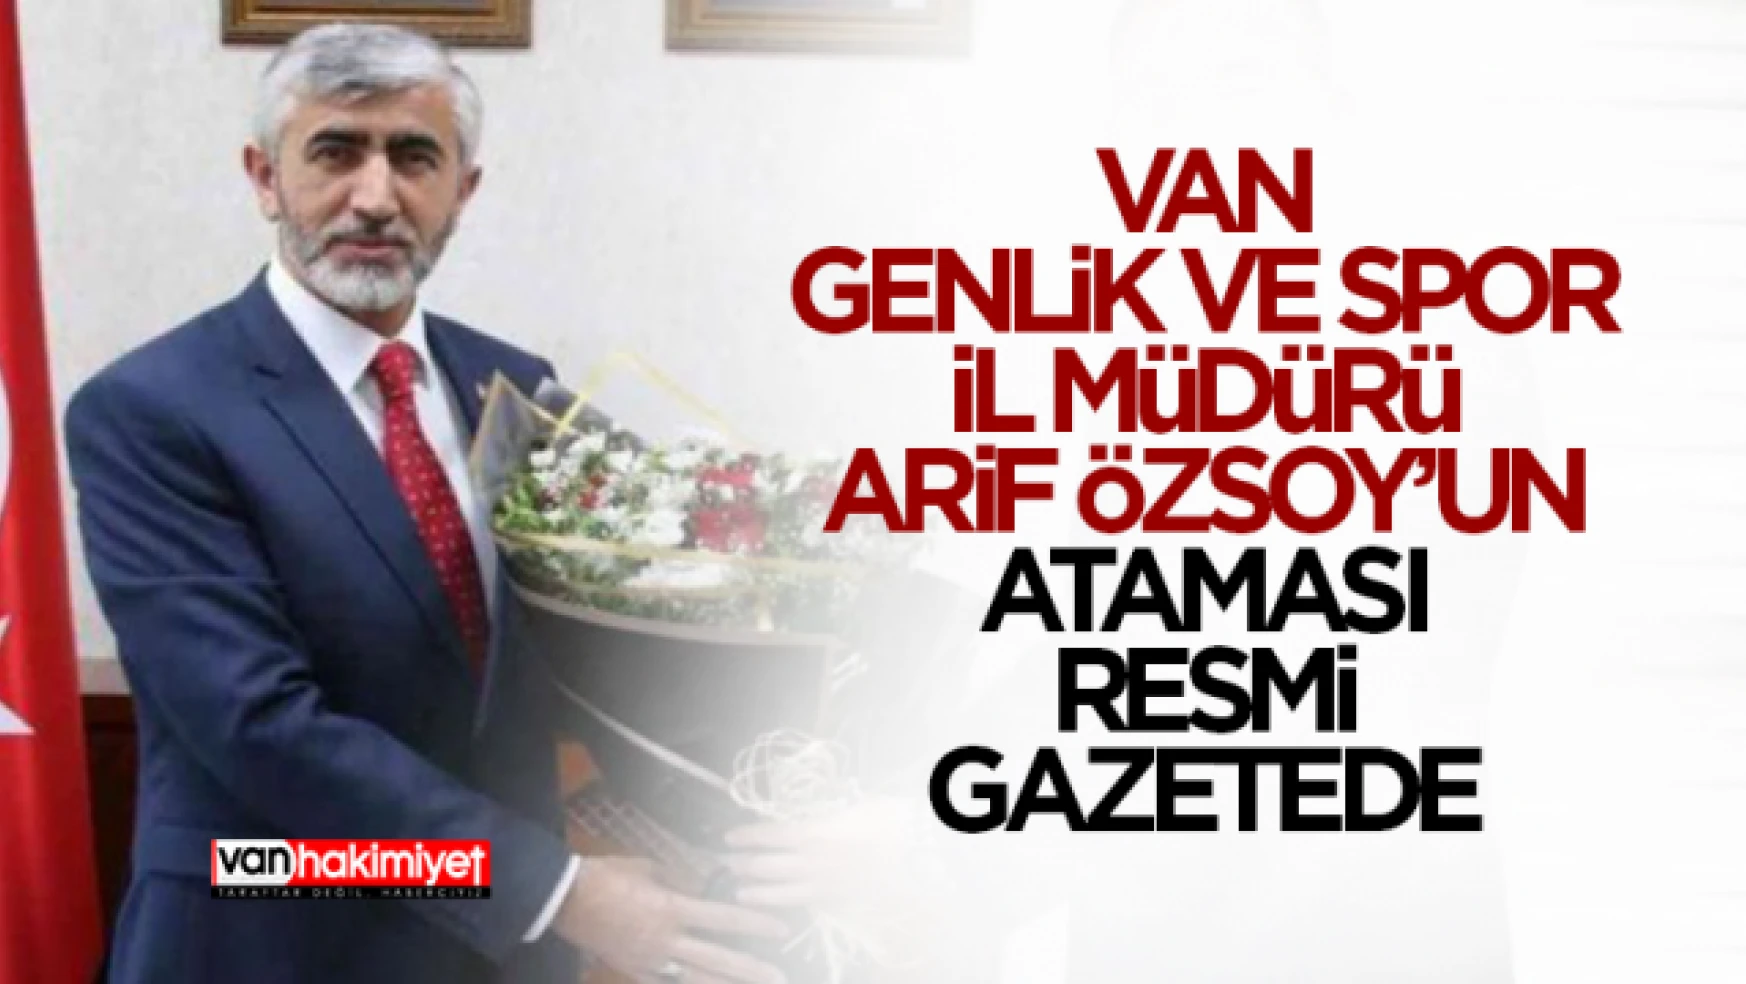 Van Gençlik ve Spor İl Müdürü Arif Özsoy'un ataması resmi gazetede!